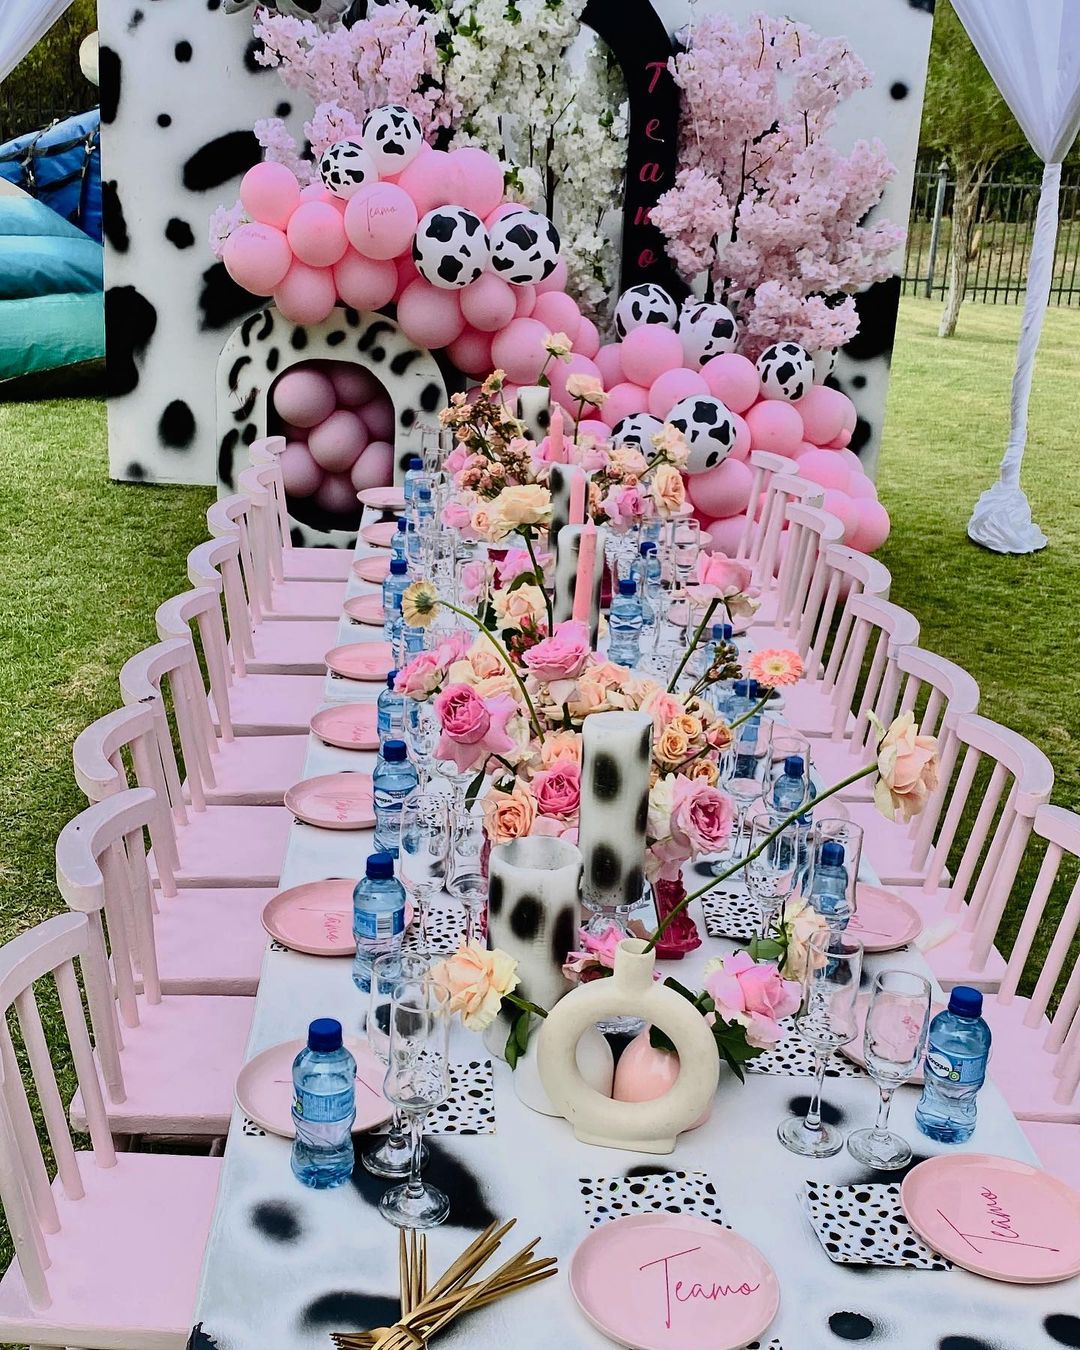 Dalmatian-themed party table arrangement